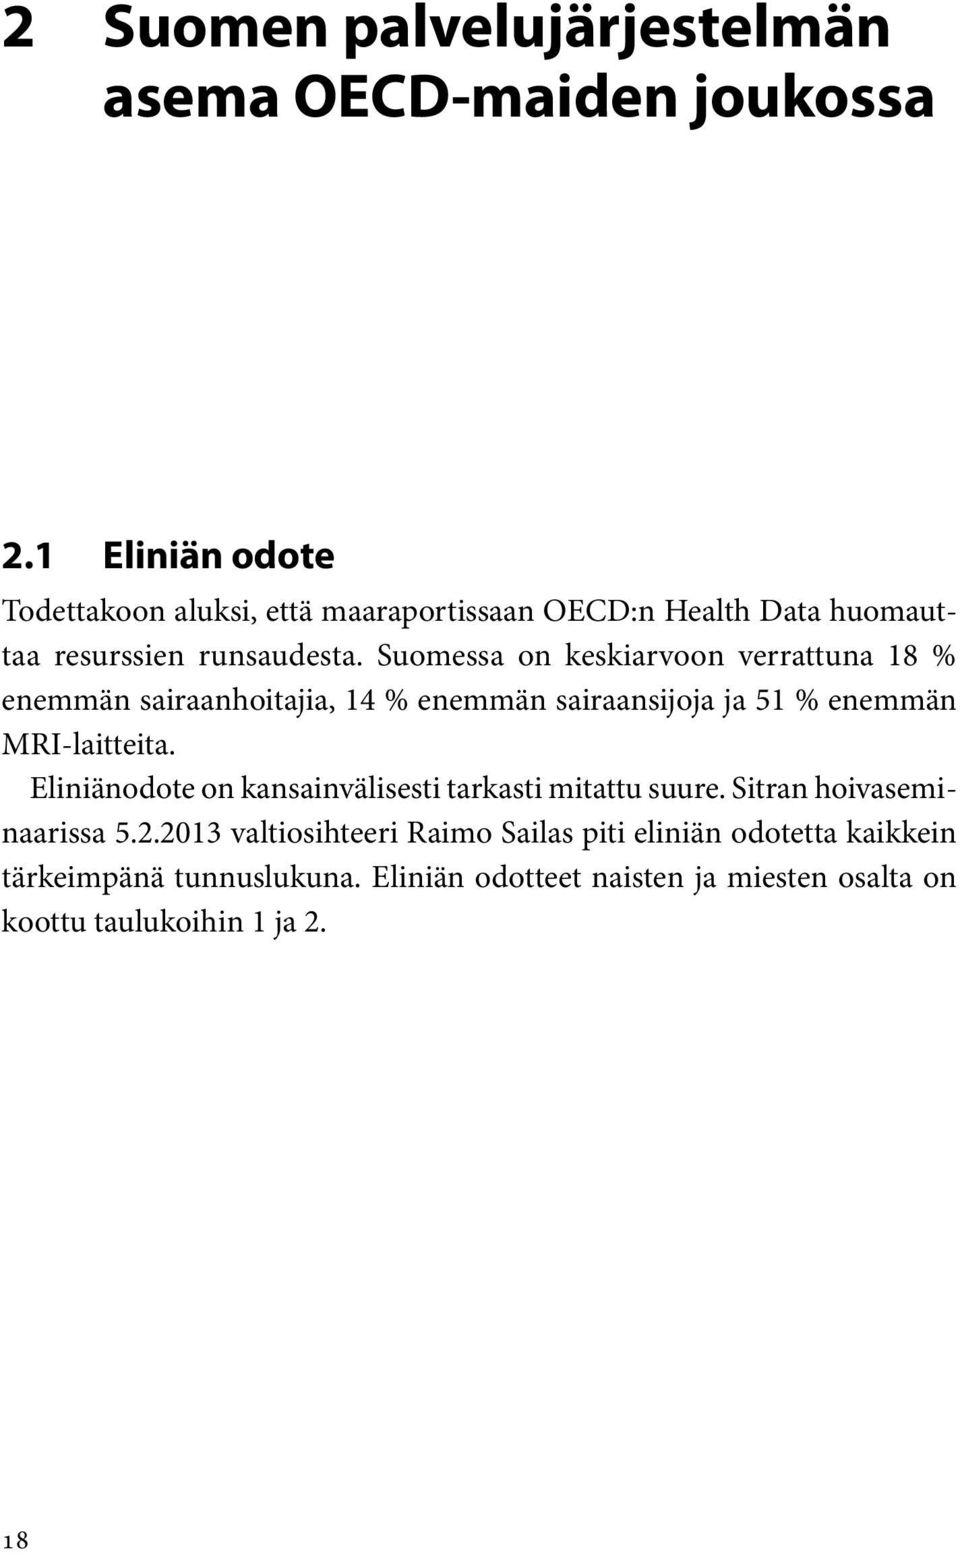 Suomessa on keskiarvoon verrattuna 18 % enemmän sairaanhoitajia, 14 % enemmän sairaansijoja ja 51 % enemmän MRI-laitteita.